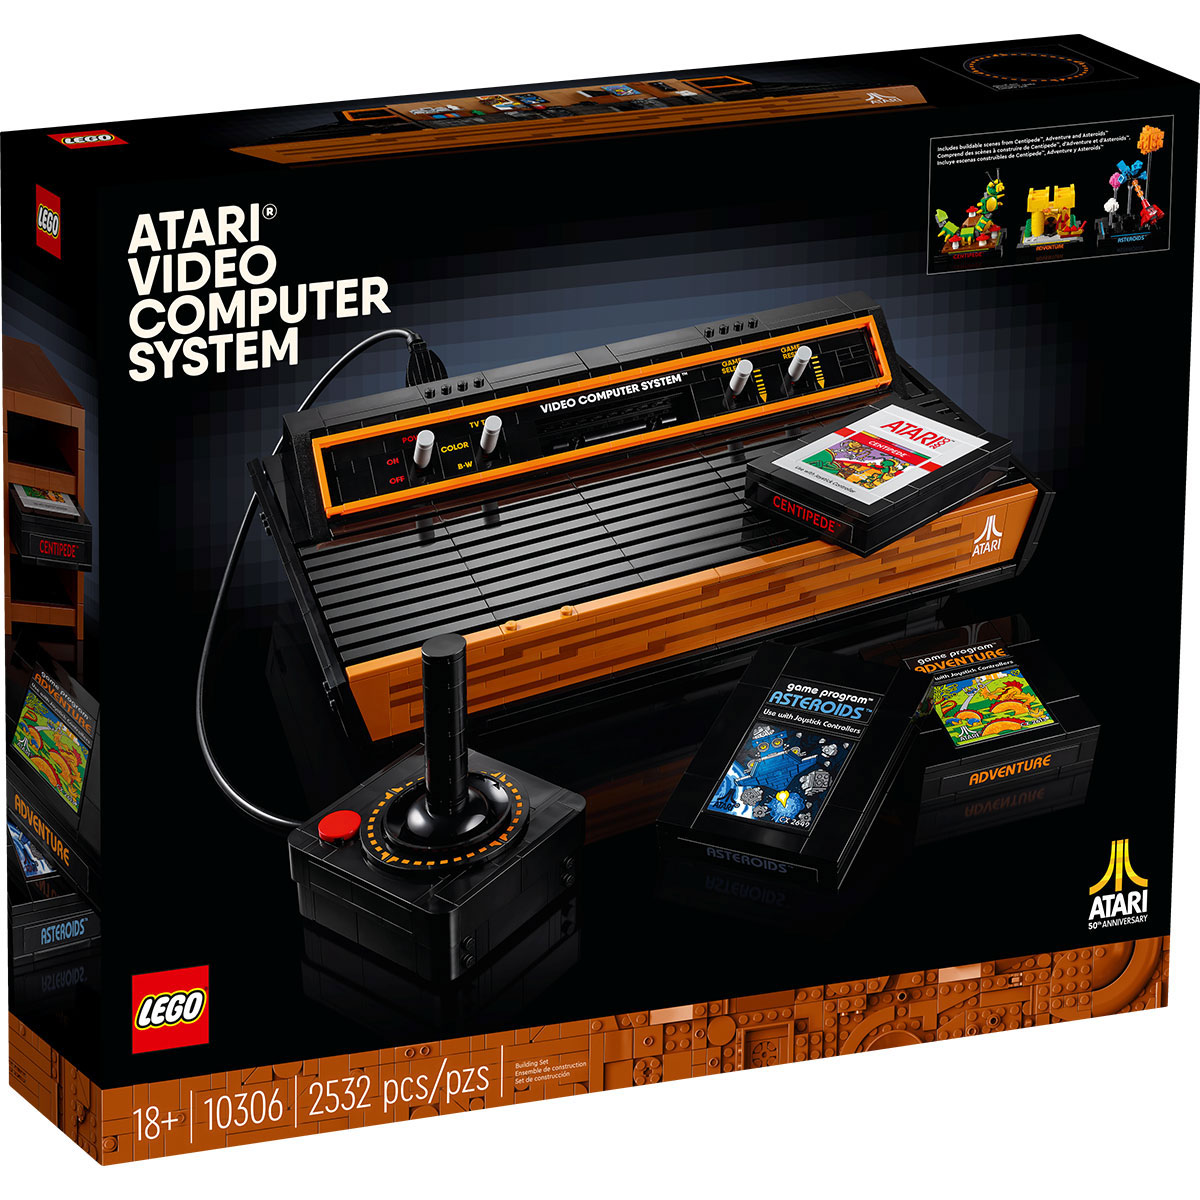 レゴ (LEGO) ICONS アイコンズ Atari 2600 VIDEO COMPUTER SYSTEM 10306 国内流通正規品 玩具 ブロック おうち時間 大人 オトナレゴ インテリア ディスプレイ おしゃれ ホビー 模型 プレゼント ギフト 誕生日 大人向け レトロ ゲーム機 リアル レプリカ コレクター